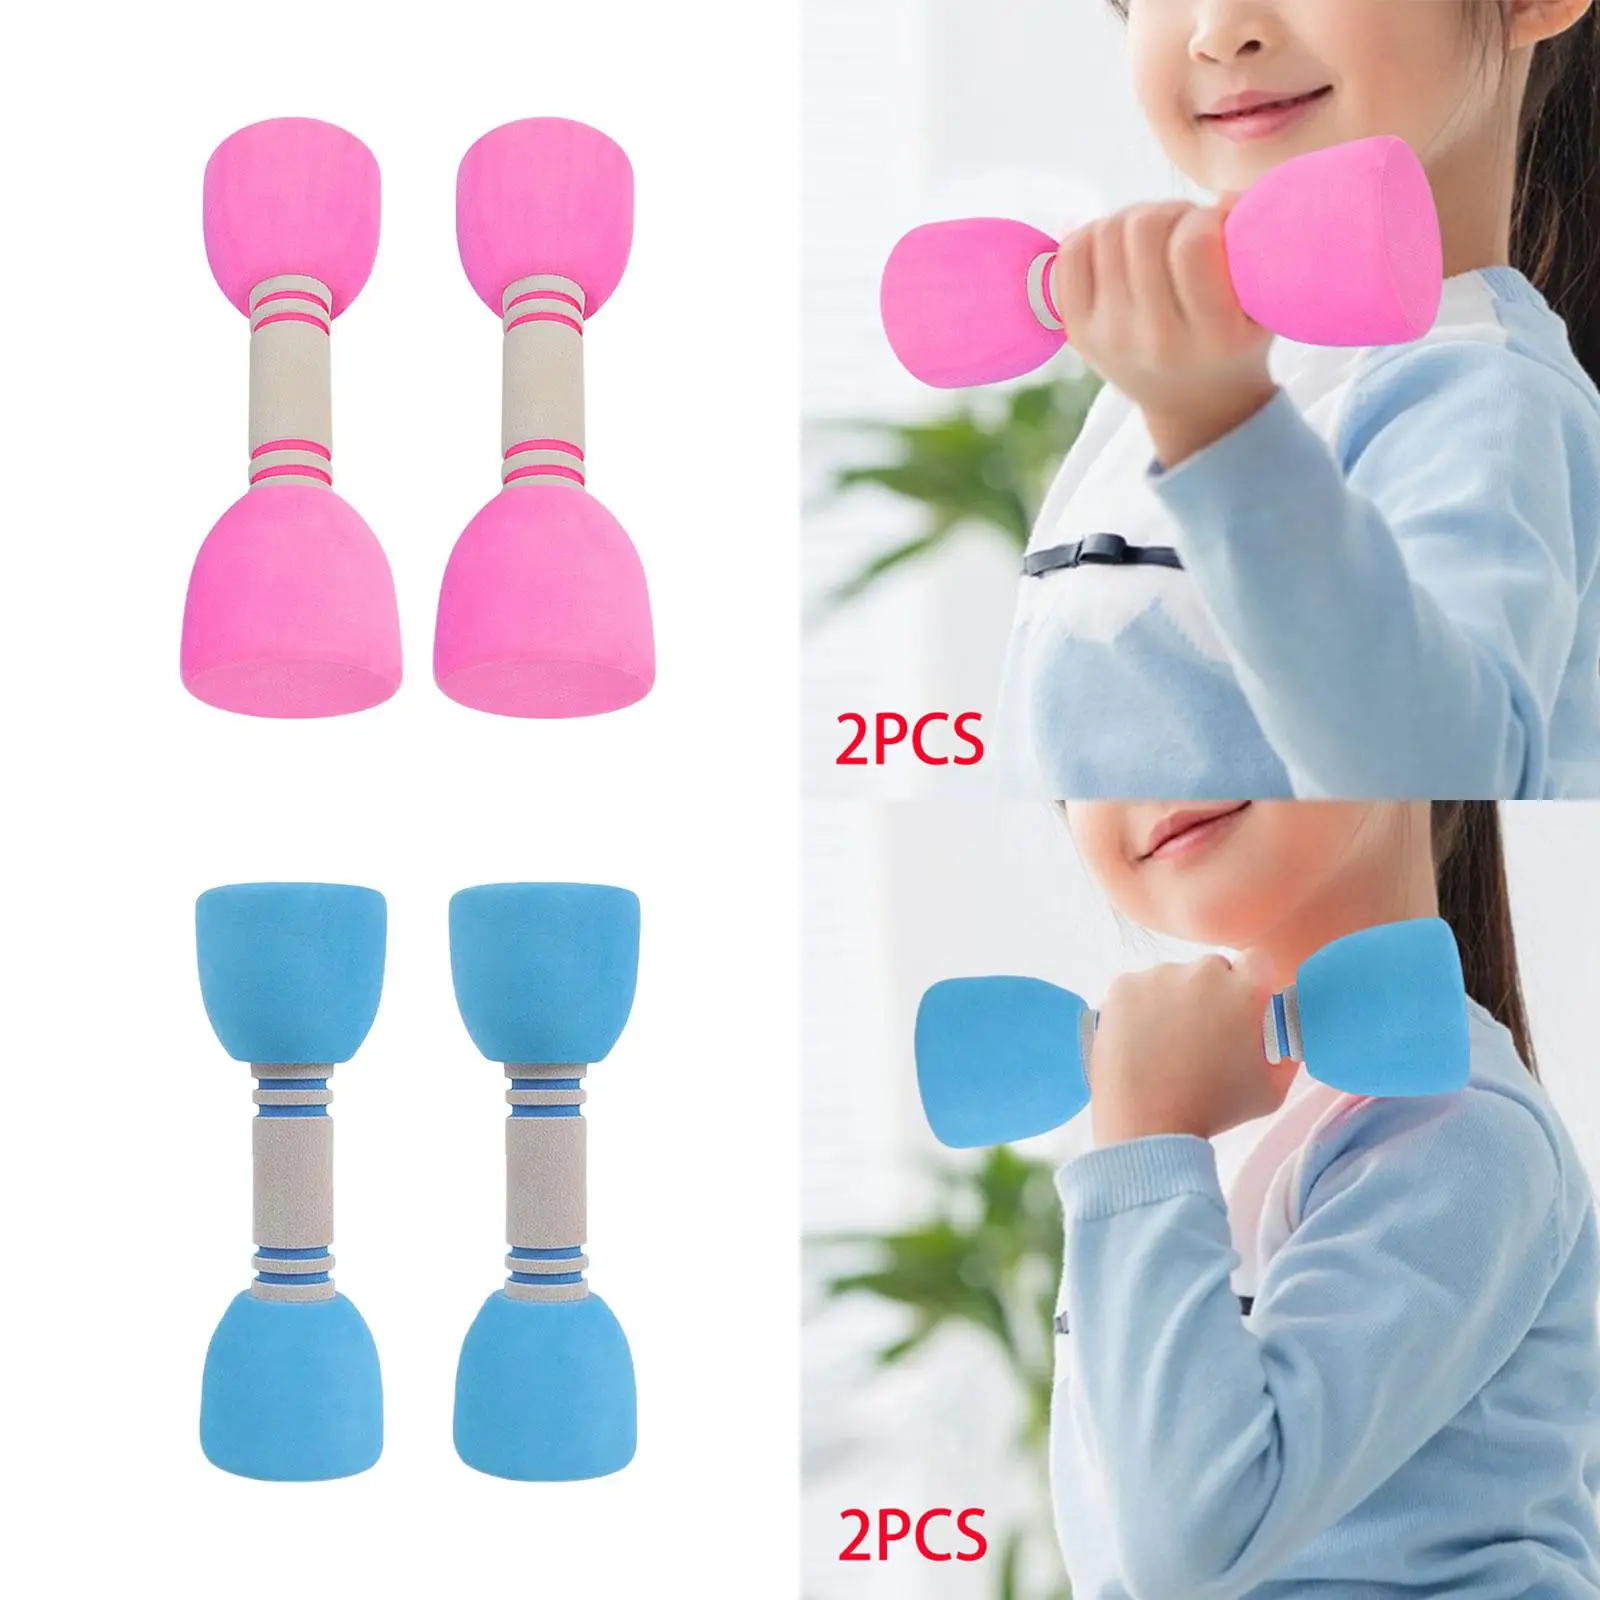 2x Kids Dumbbells Set Non Slip EVA Dumbbells for Workouts Home Use Fitness